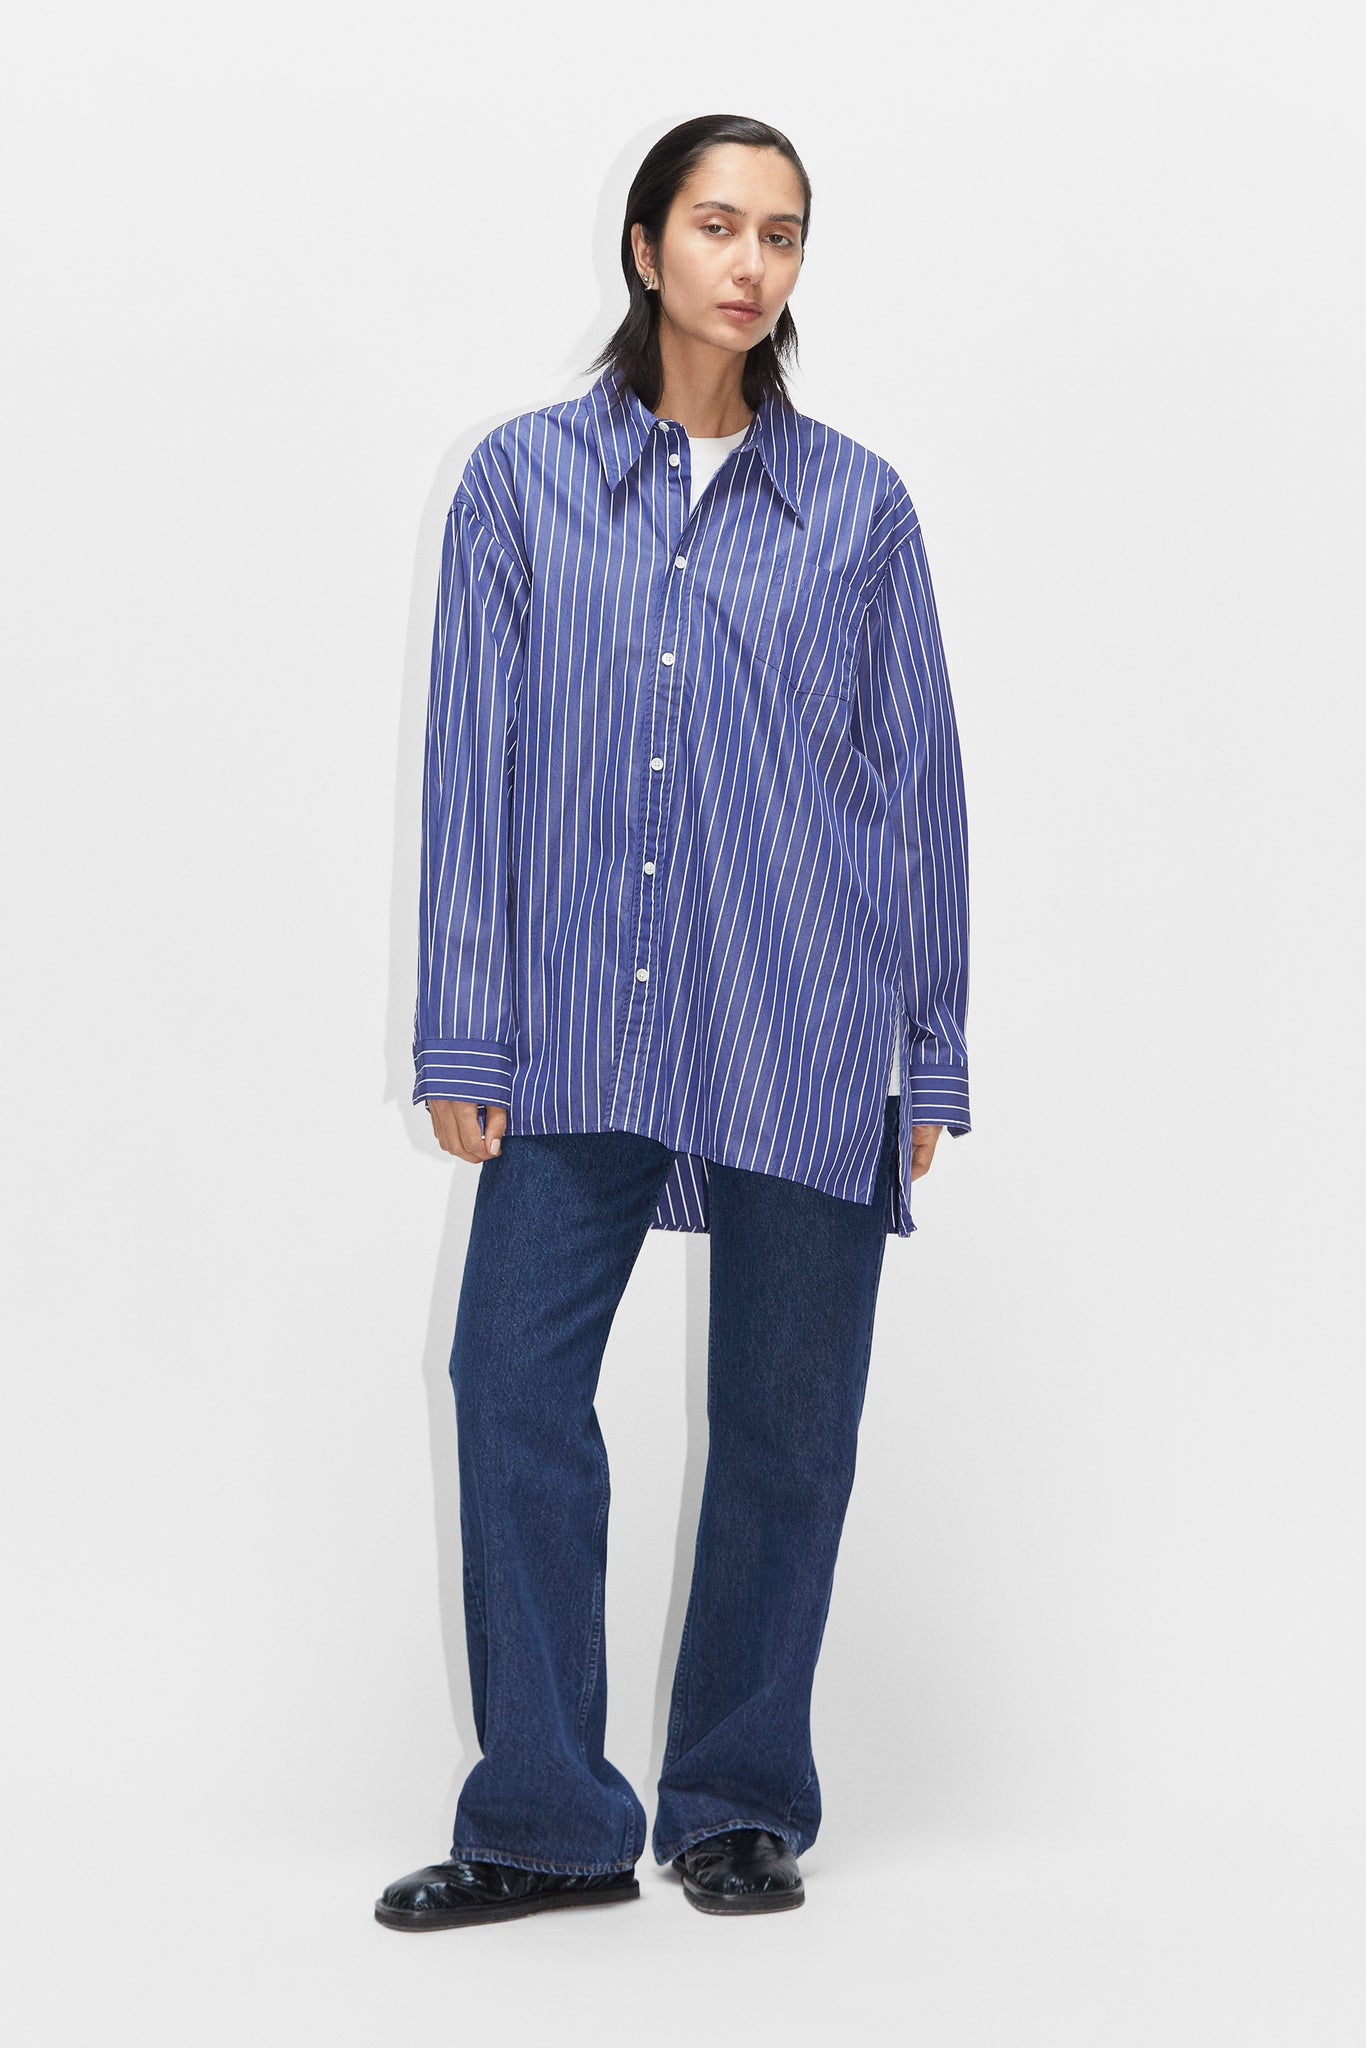 HOPE – Asymmetrical Stripe Blue Dark in Shirt Oversized STHLM